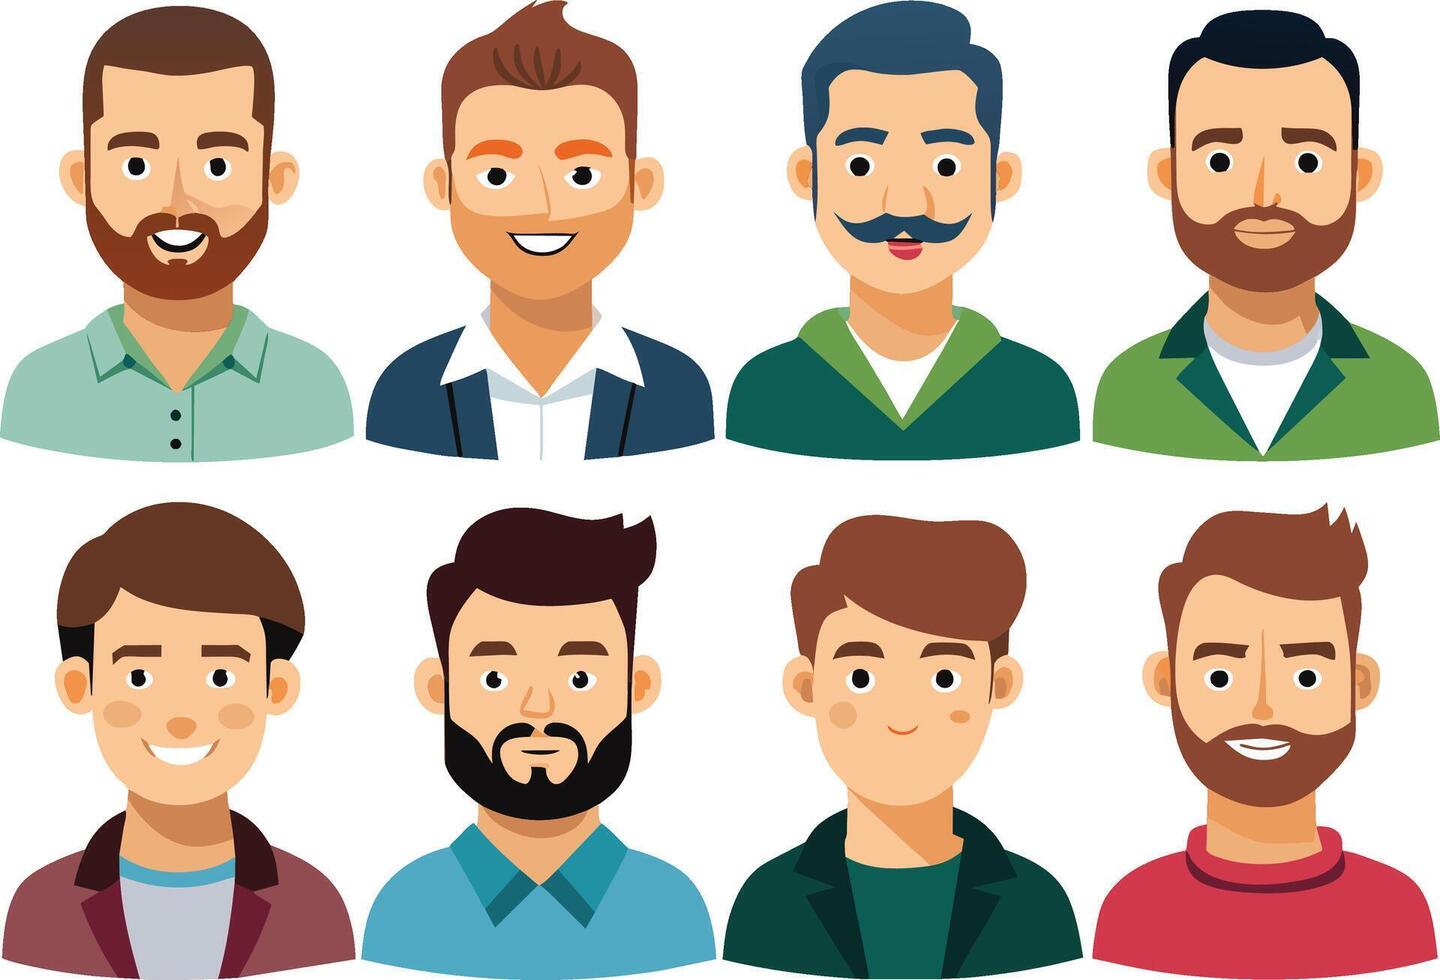 reeks van mannen avatars met verschillend kapsels. vector illustratie.